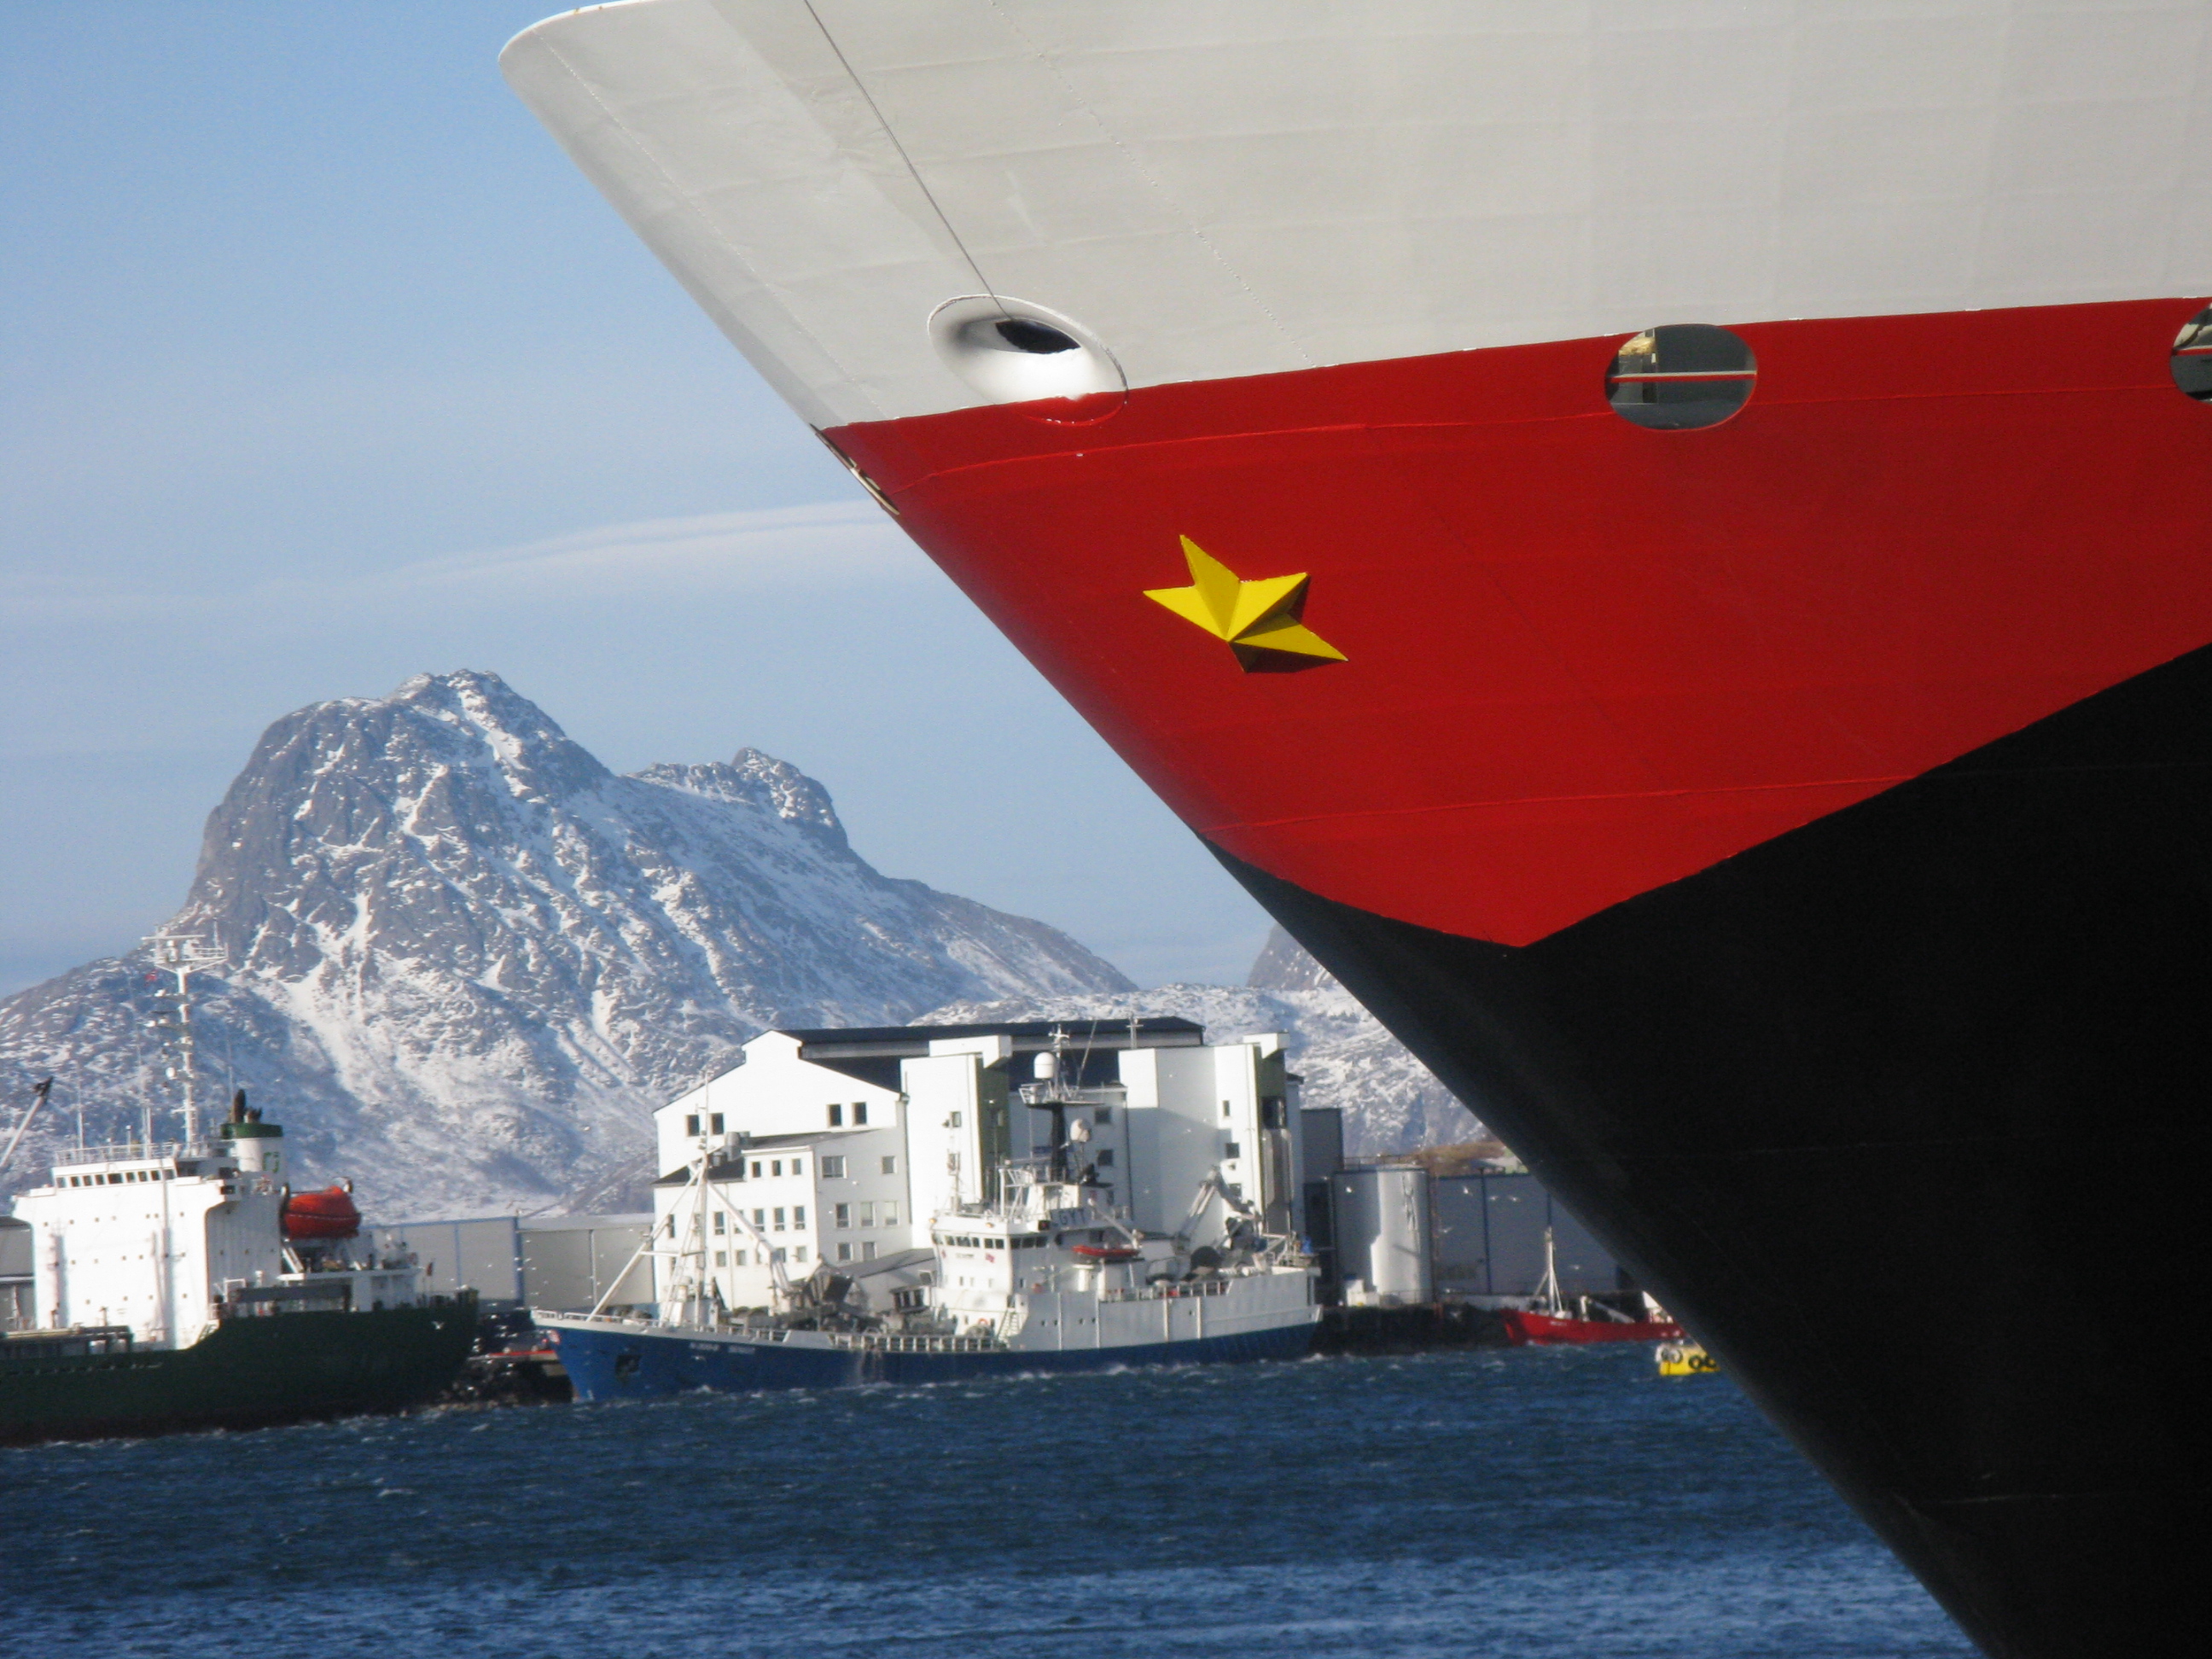 I miss my Hurtigruten home...